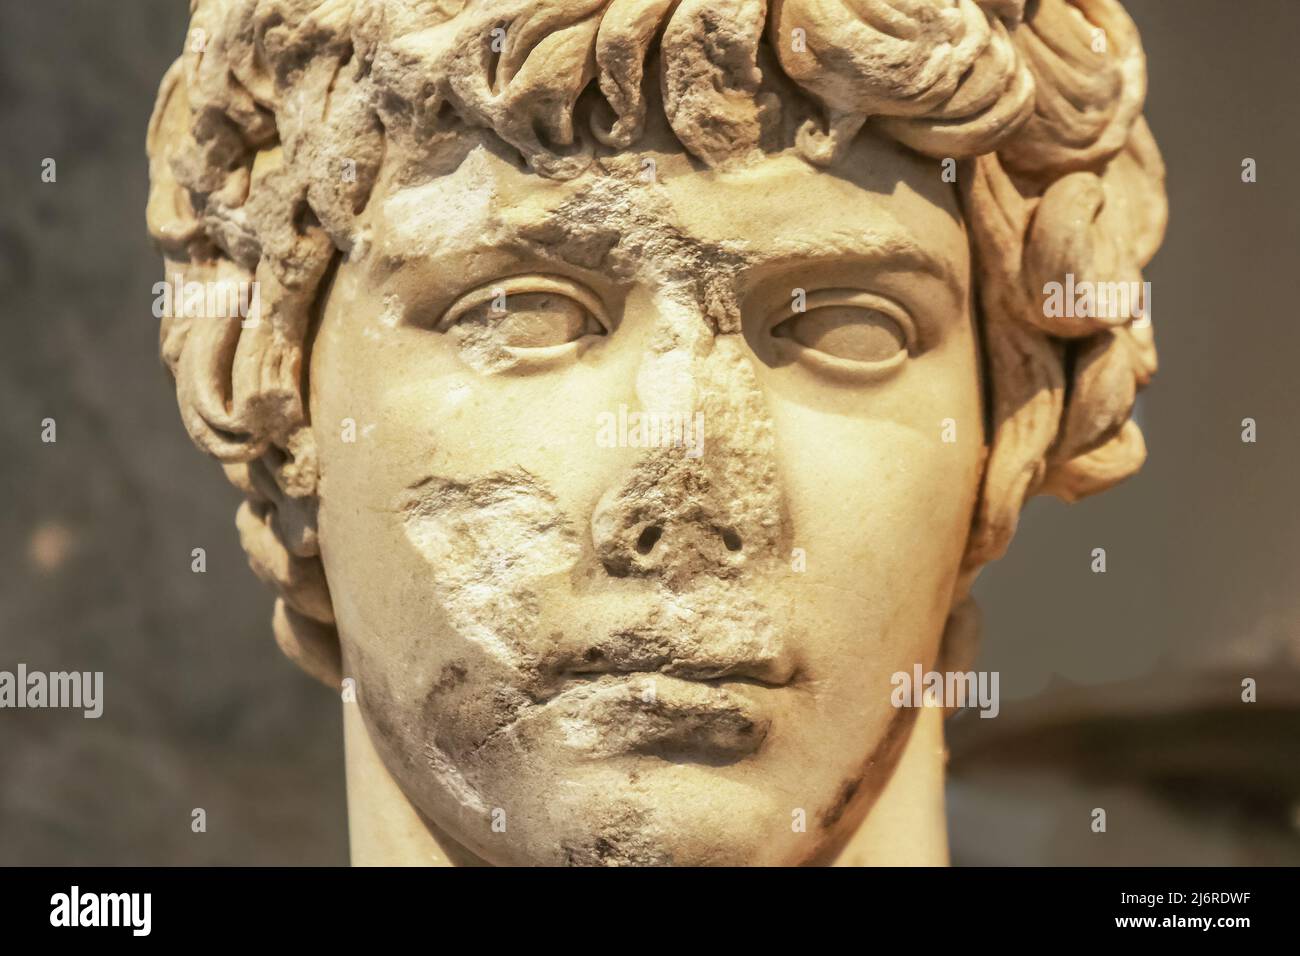 Nahaufnahme des Kopfes einer antiken Marmorstatue einer attraktiven griechischen Jugend mit abgebrochenem und zerstörtem Gesicht Stockfoto